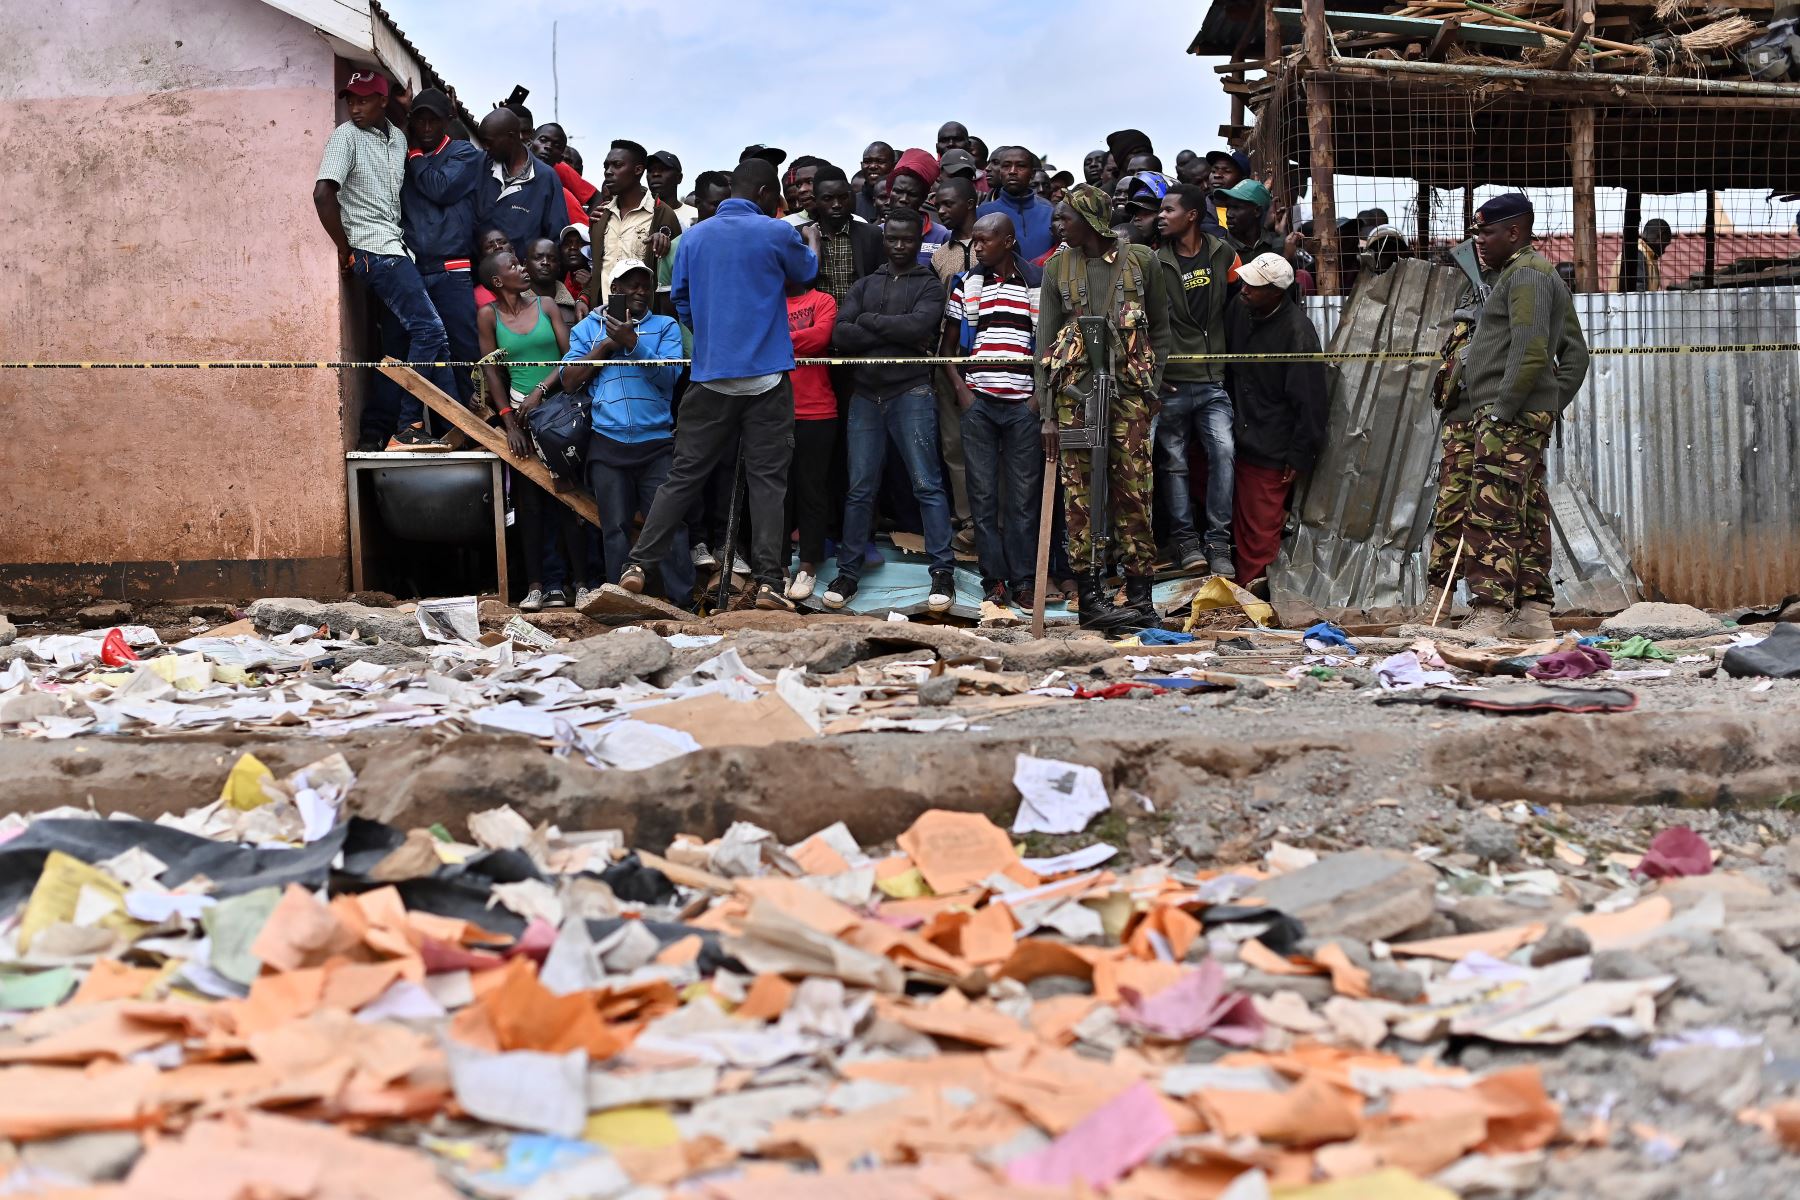 Los familiares esperan afuera de un perímetro de seguridad establecido cerca del área de un edificio escolar derrumbado, en Nairobi. Siete niños murieron y decenas resultaron heridos cuando un edificio escolar se derrumbó en la capital de Kenia.
Foto: AFP